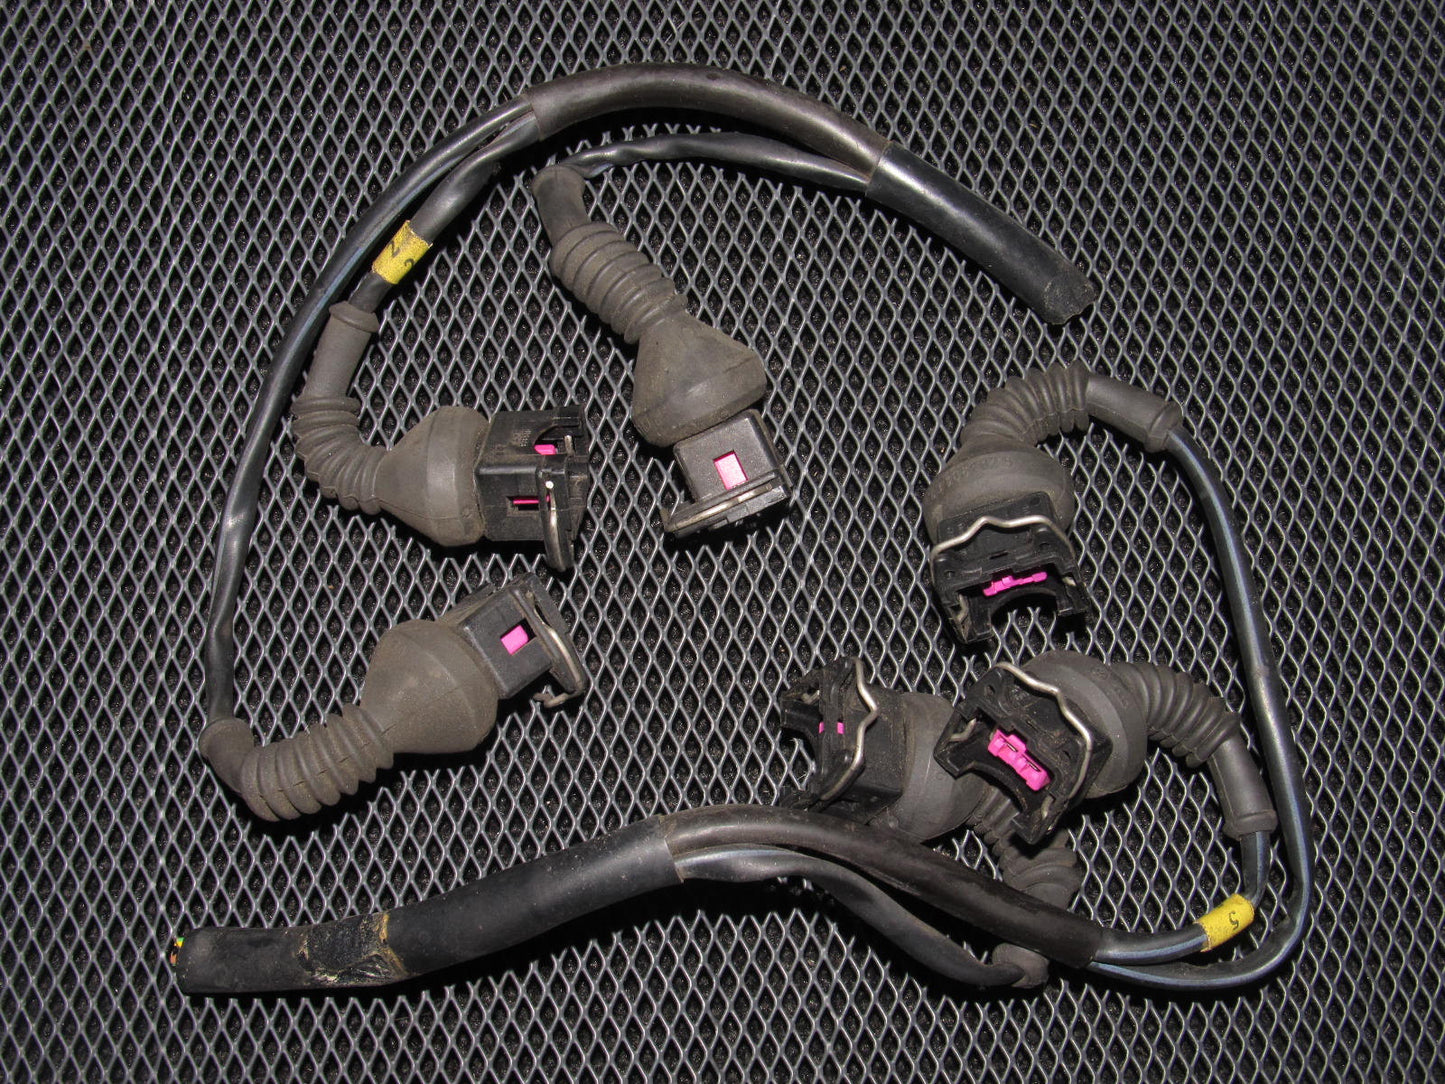 96-01 Audi A4 2.8L V6 OEM Fuel Injector Harness Set